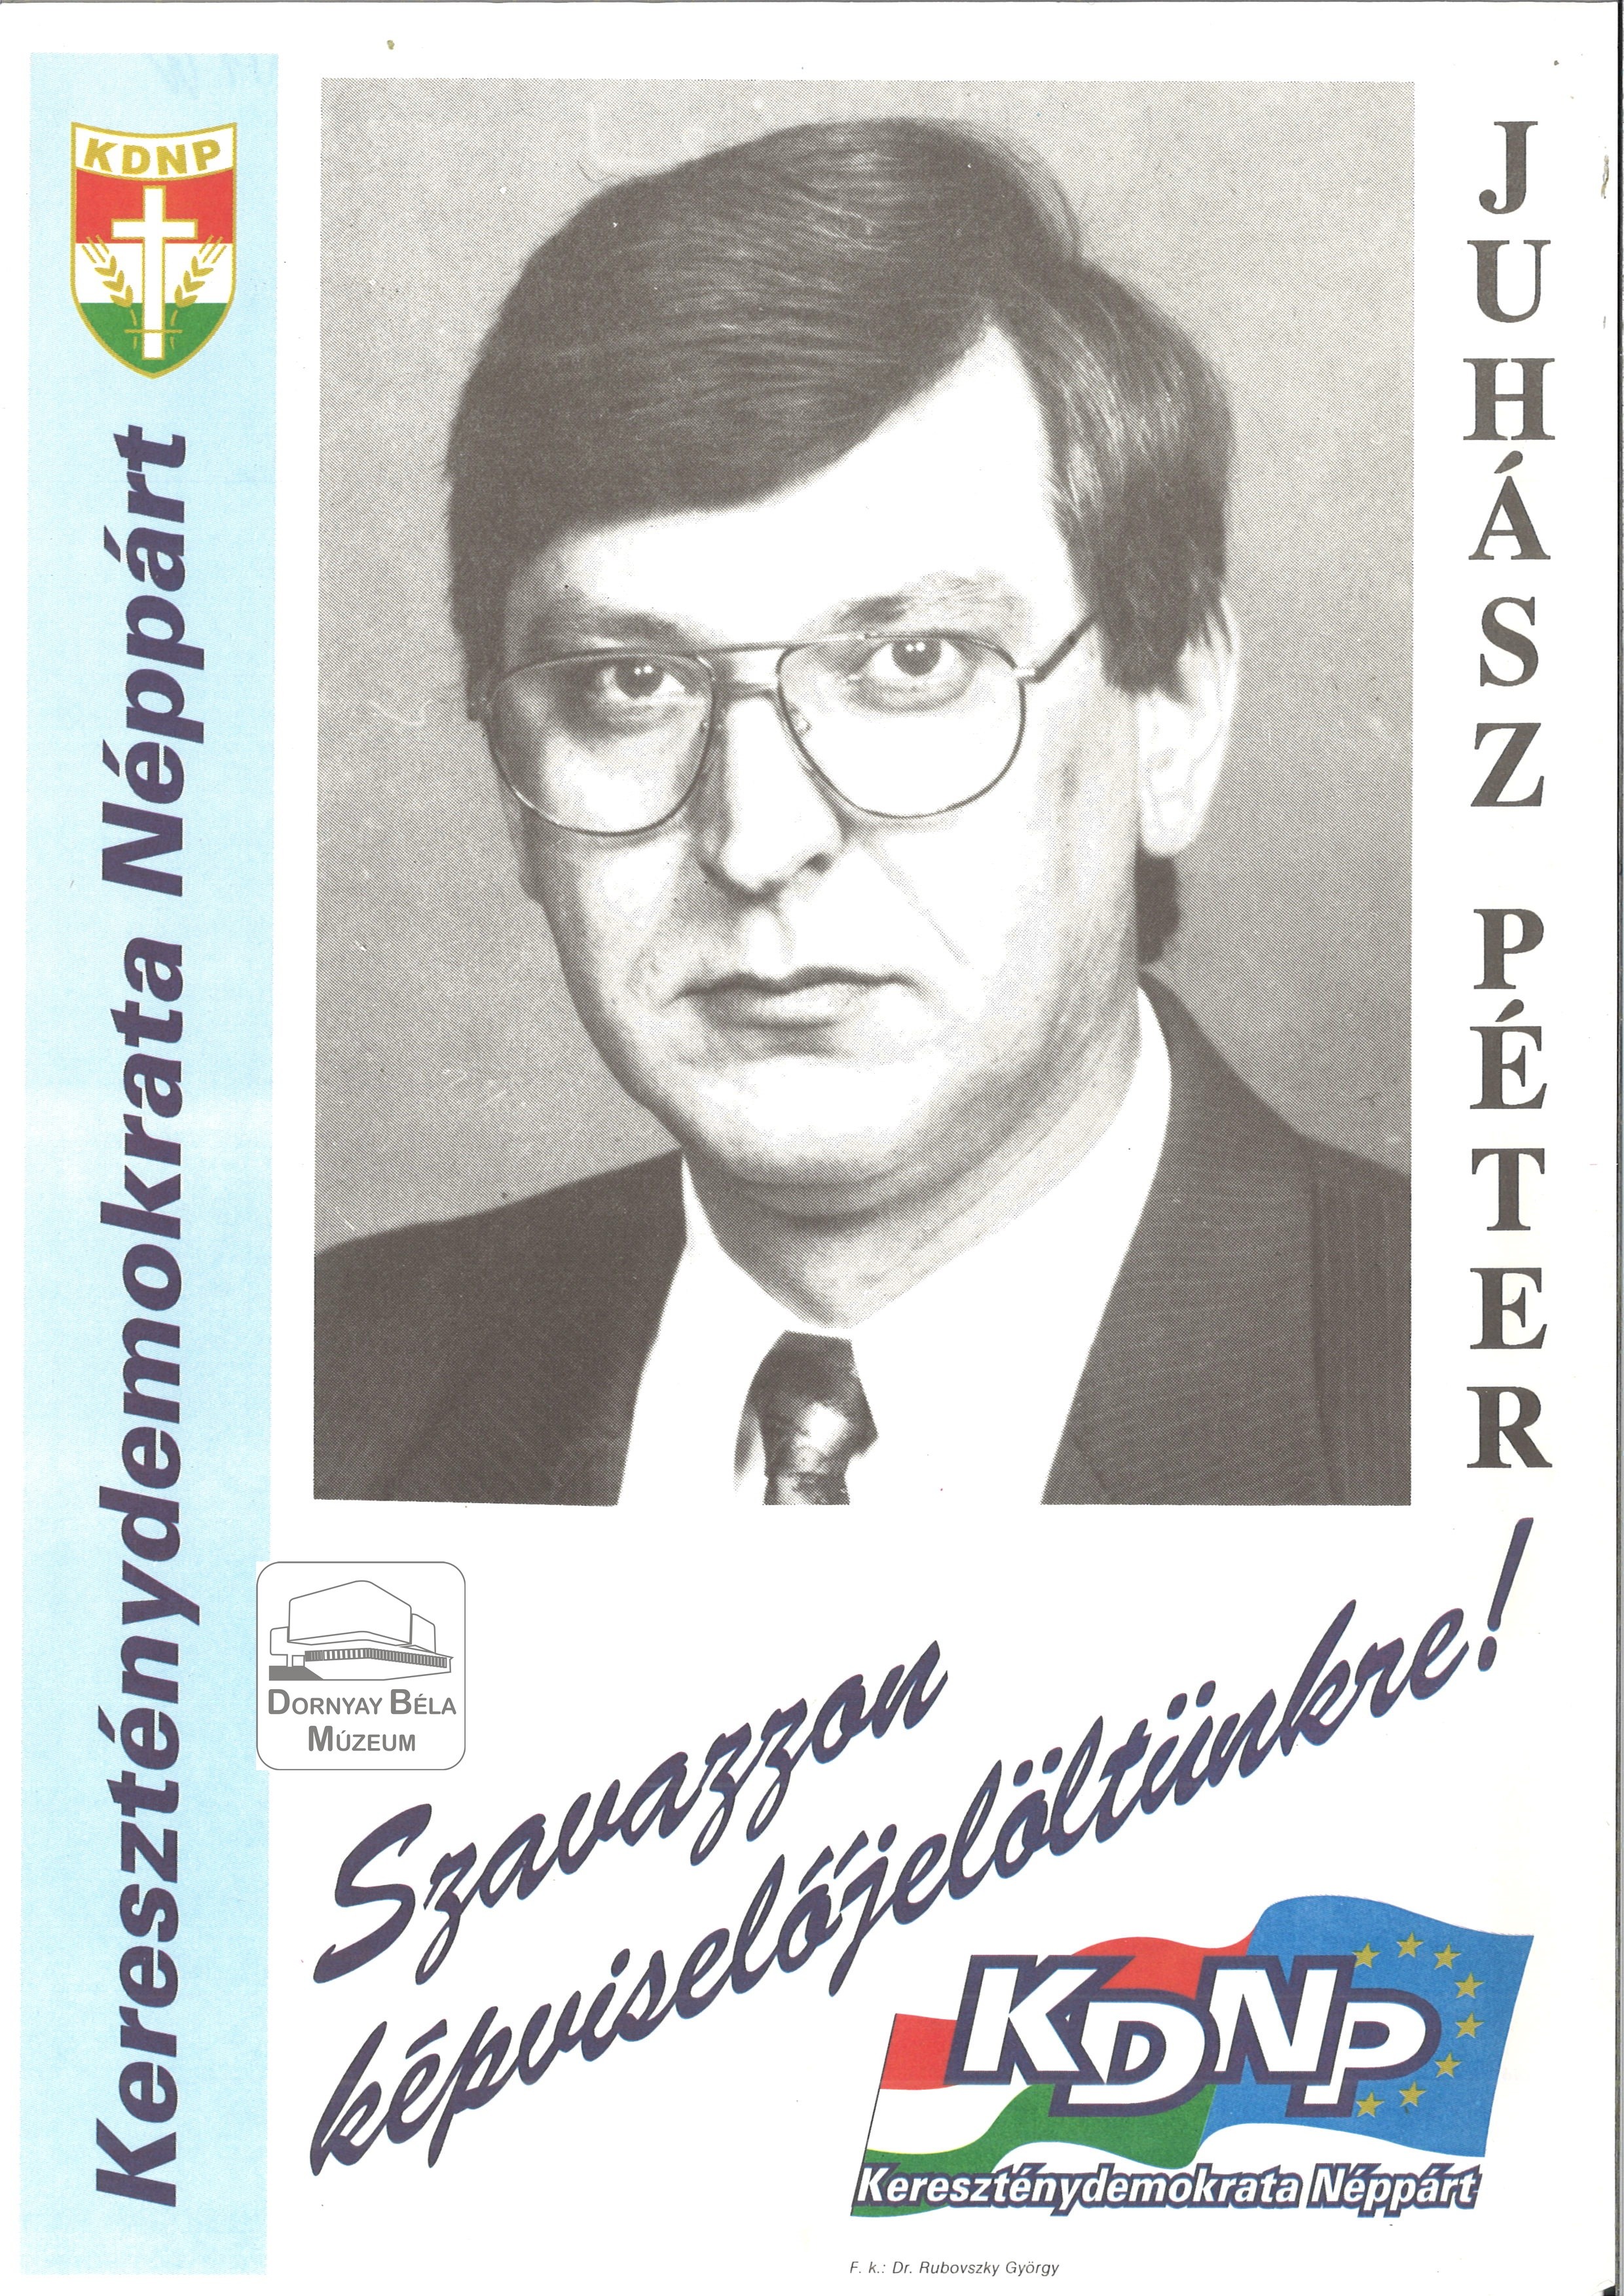 KDNP 3.sz. Választókerület képviselőjelöltjének fényképe. (Dornyay Béla Múzeum, Salgótarján CC BY-NC-SA)